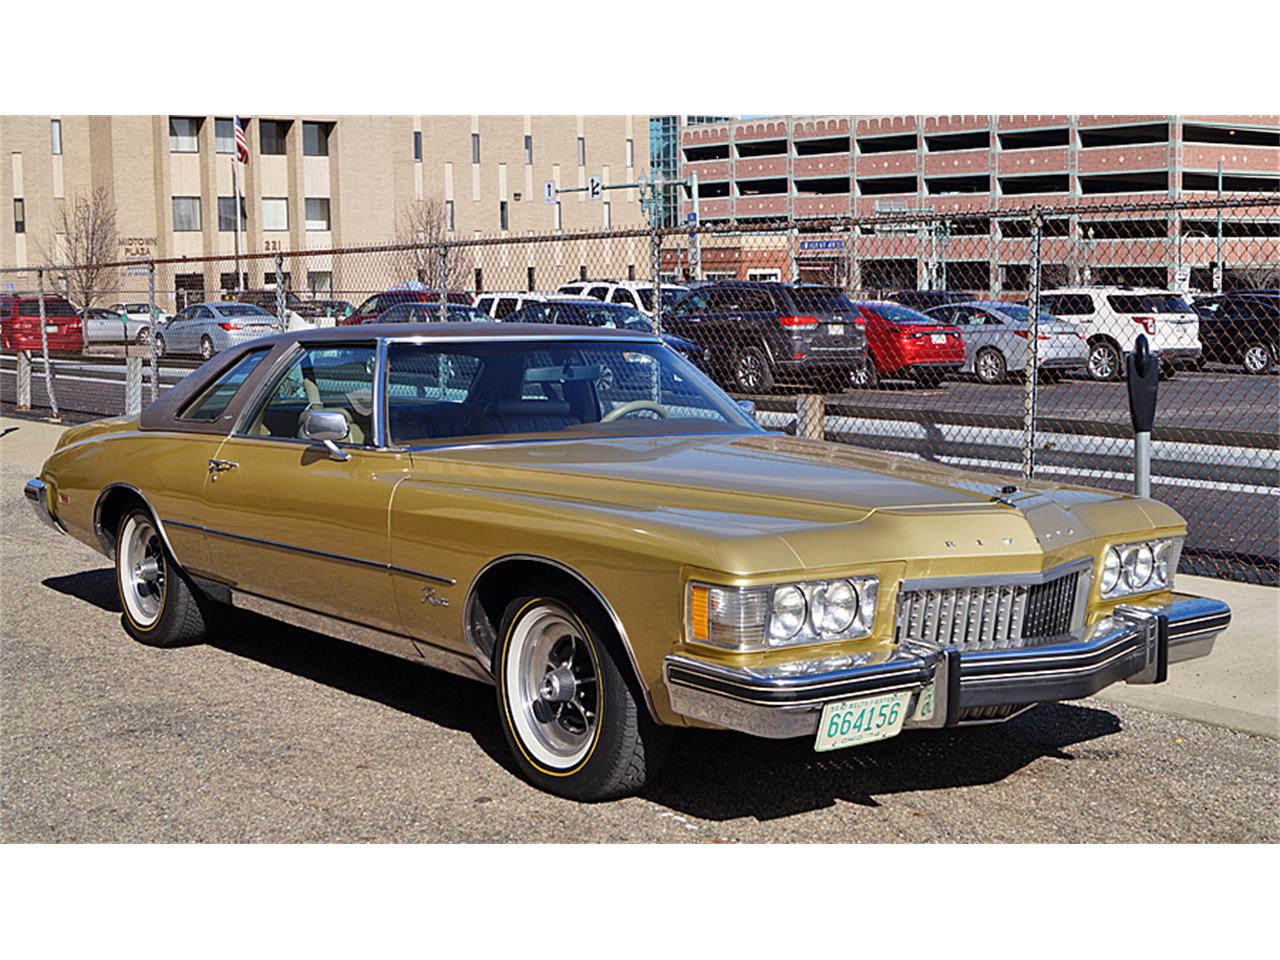 For Sale: 1974 Buick Riviera in Canton, Ohio.